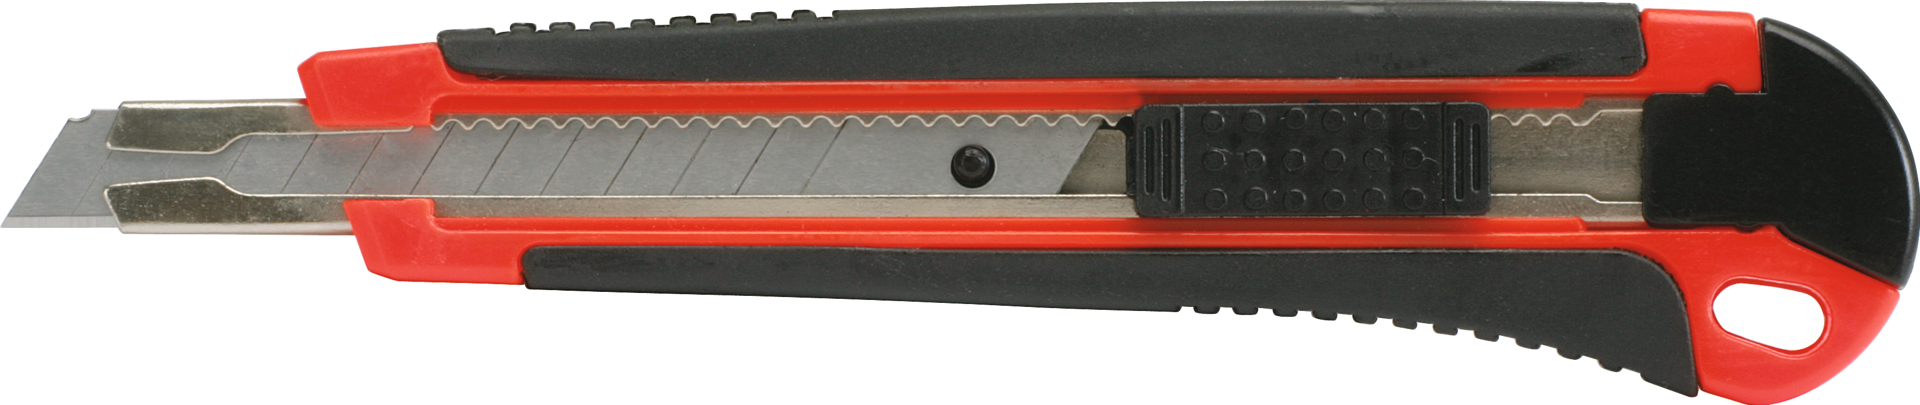 Messer Abbrechklinge 9mm Standard inkl. 1 Abbrechklinge L140mm